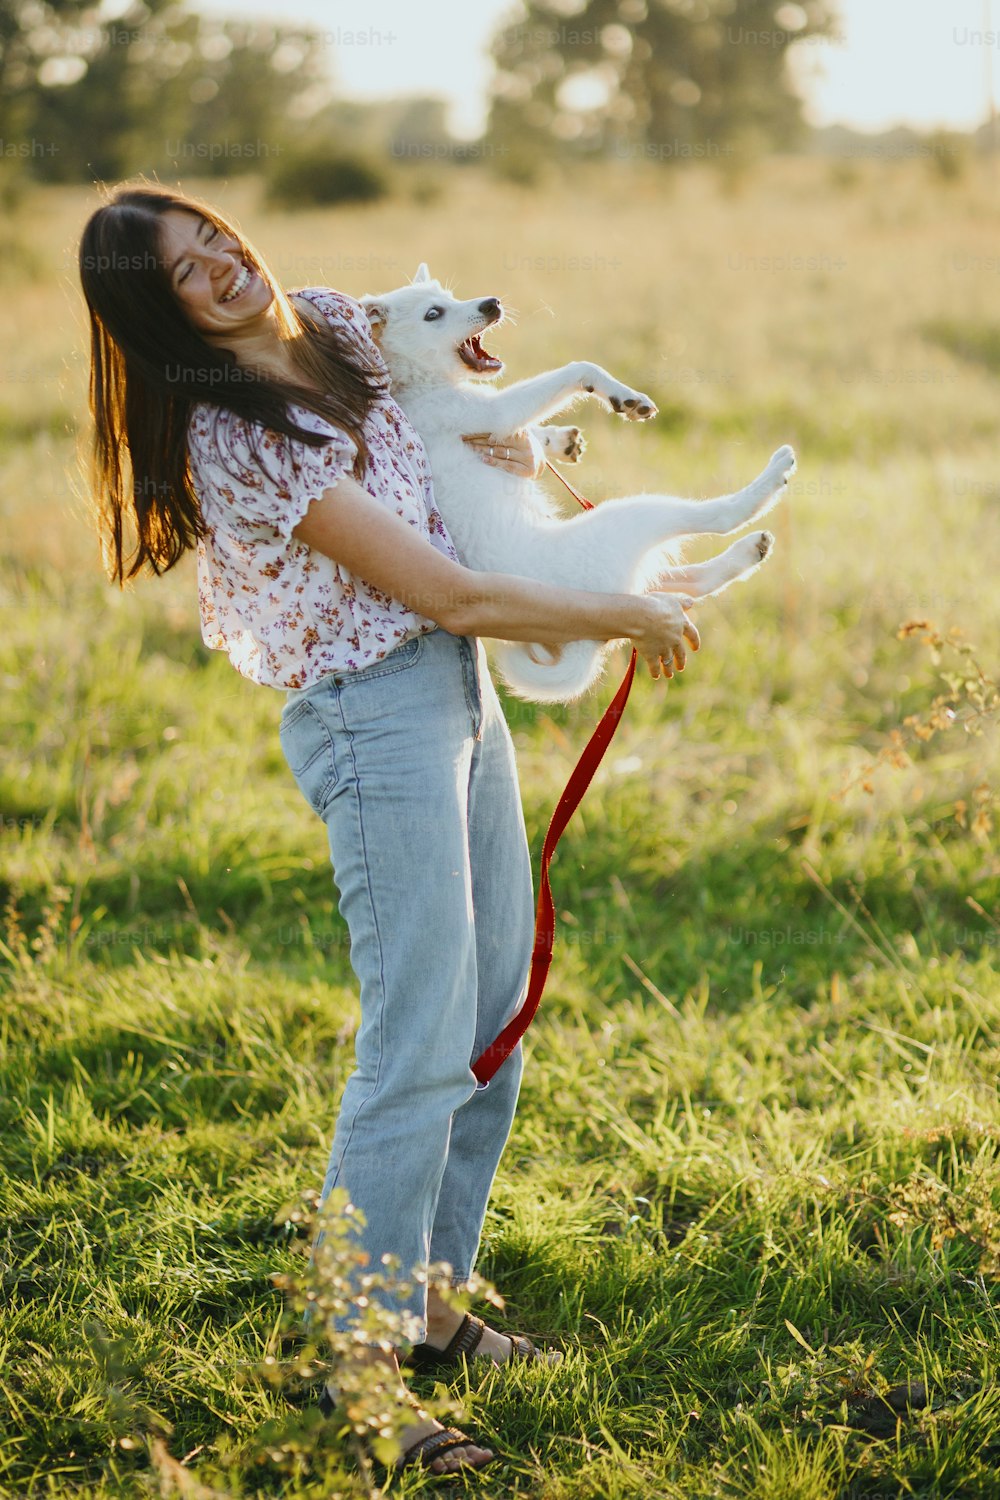 Chica sosteniendo un cachorro juguetón adorable y esponjoso, momento hilarante. Jugando con el perrito. Mujer joven feliz sosteniendo un cachorro blanco divertido en la cálida luz del atardecer en el prado de verano.